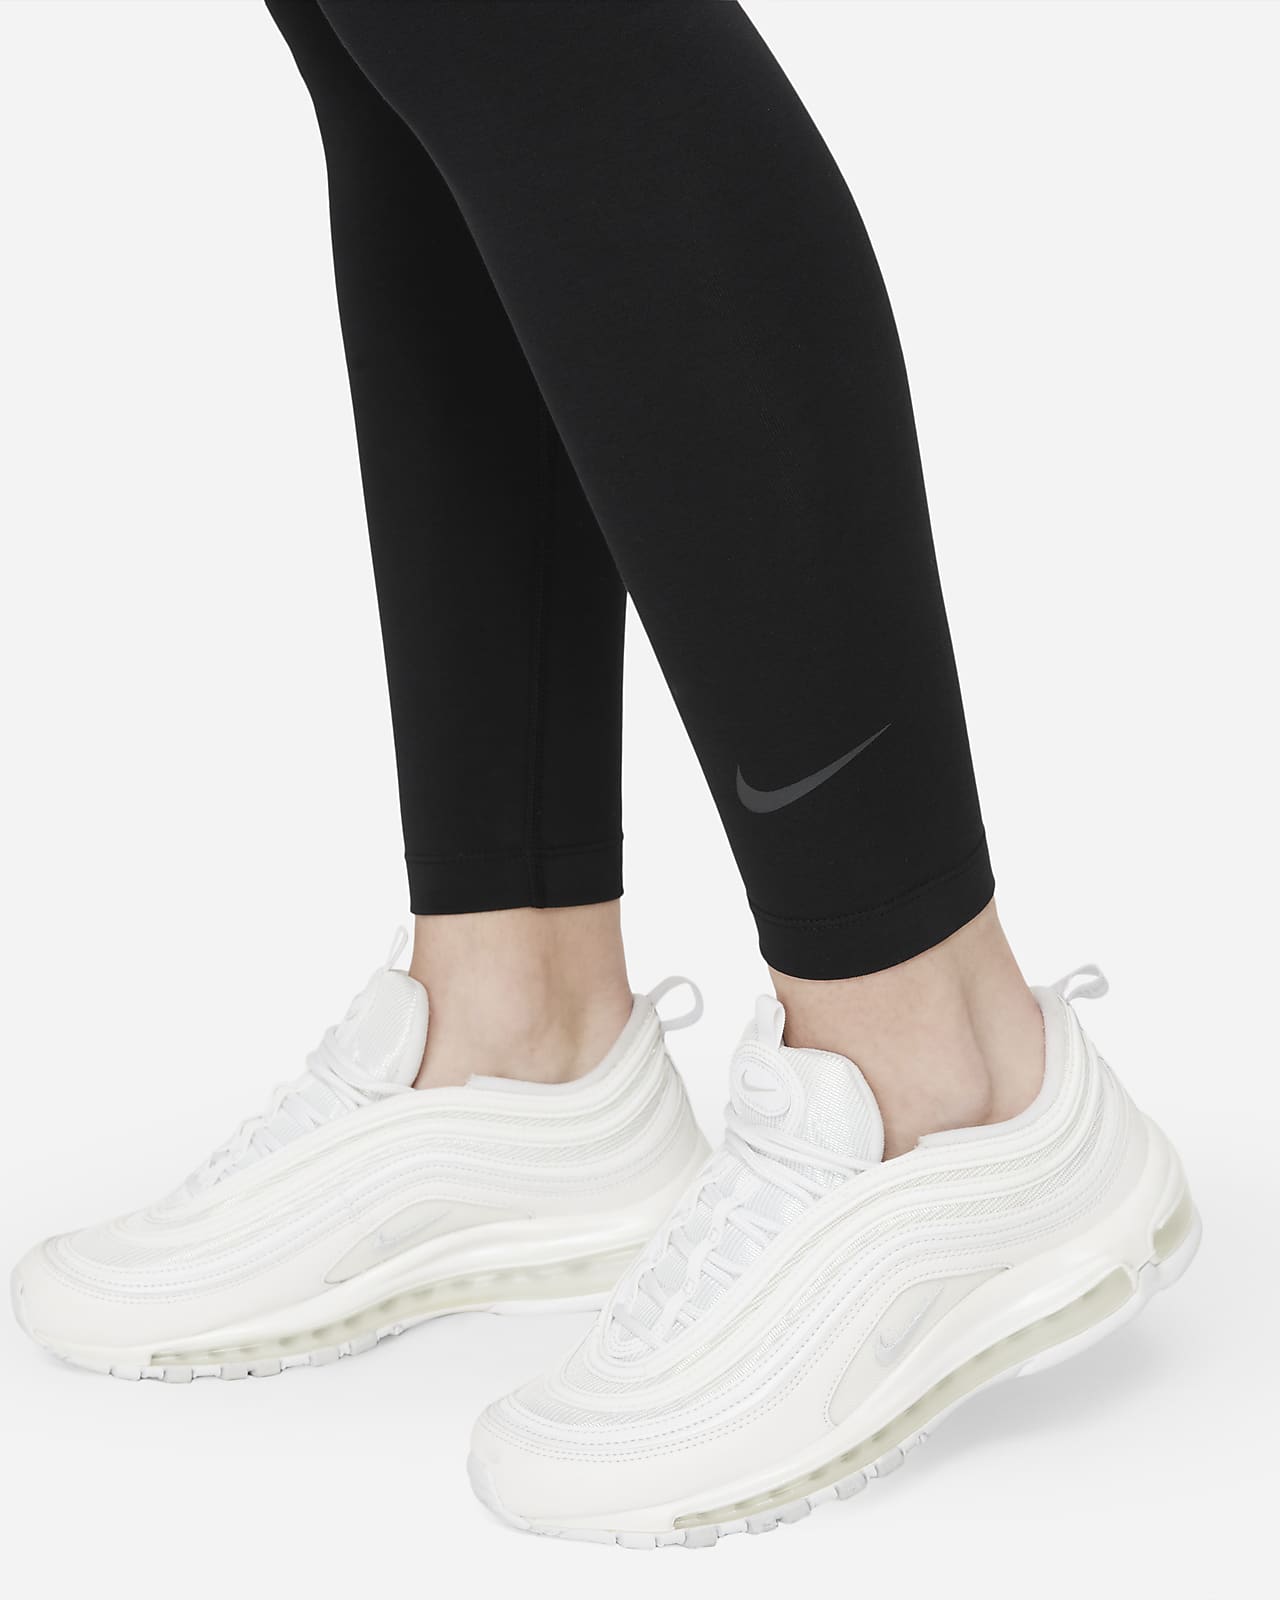 Nike Sportswear Air High-Rise Tights Women - black/white FB8070-010